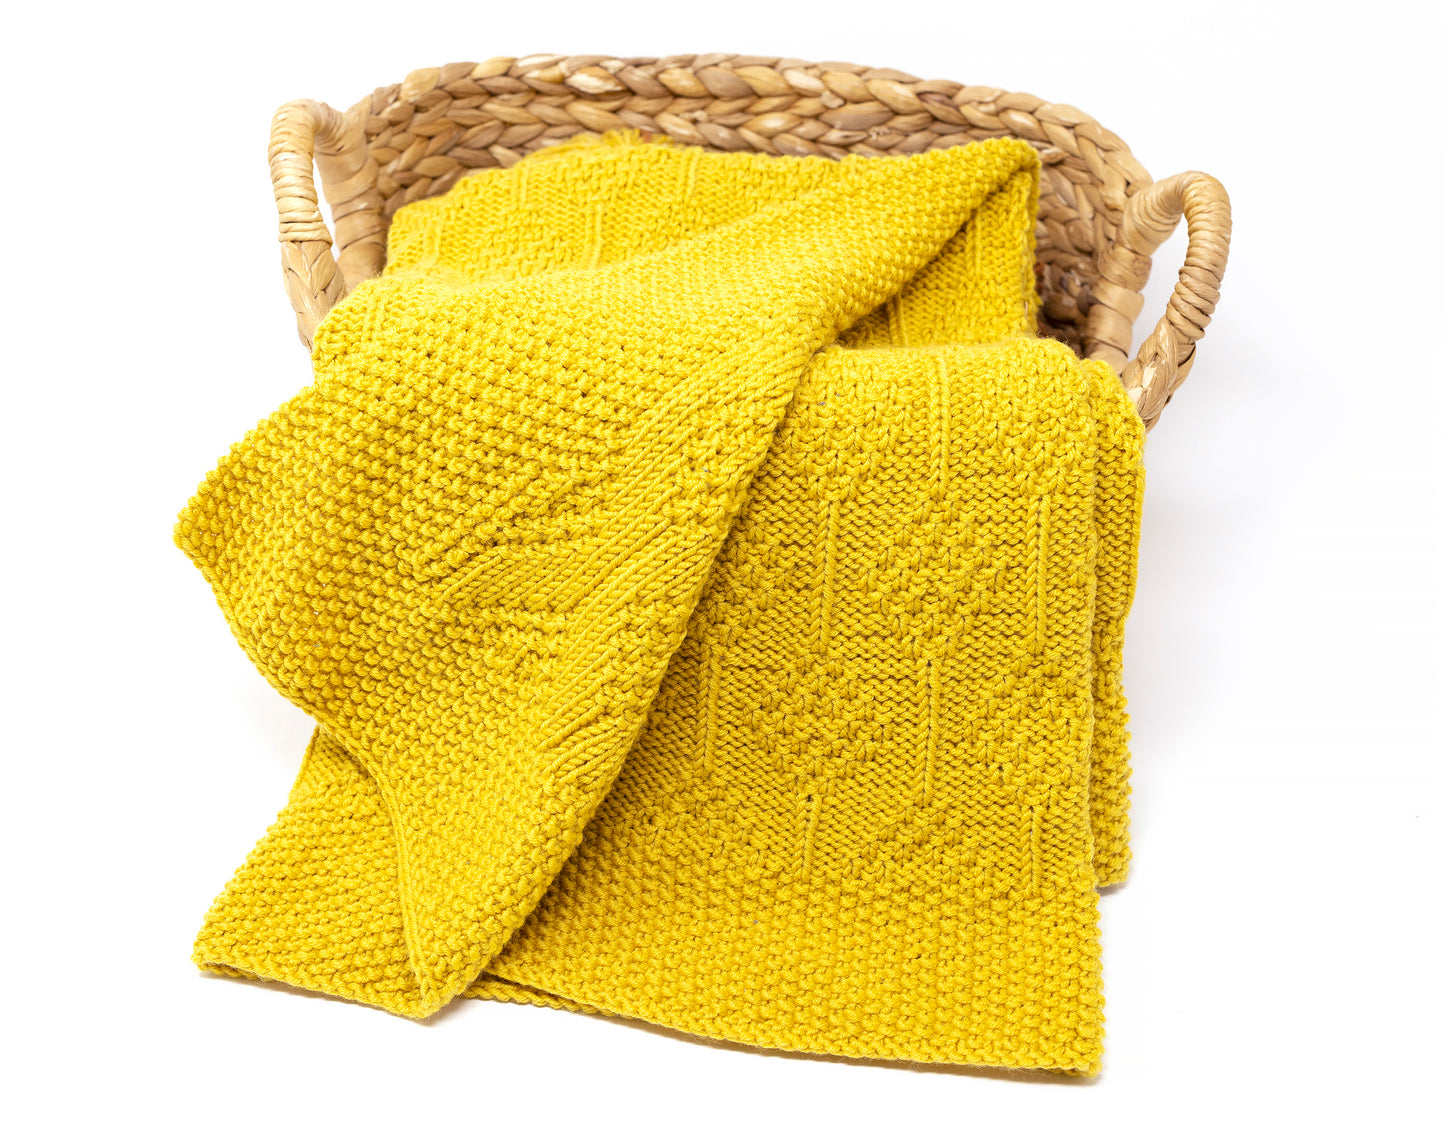 Details of Yellow superwash merino wool DK yarn hand-knitted baby blanket in Diamonds knitting pattern